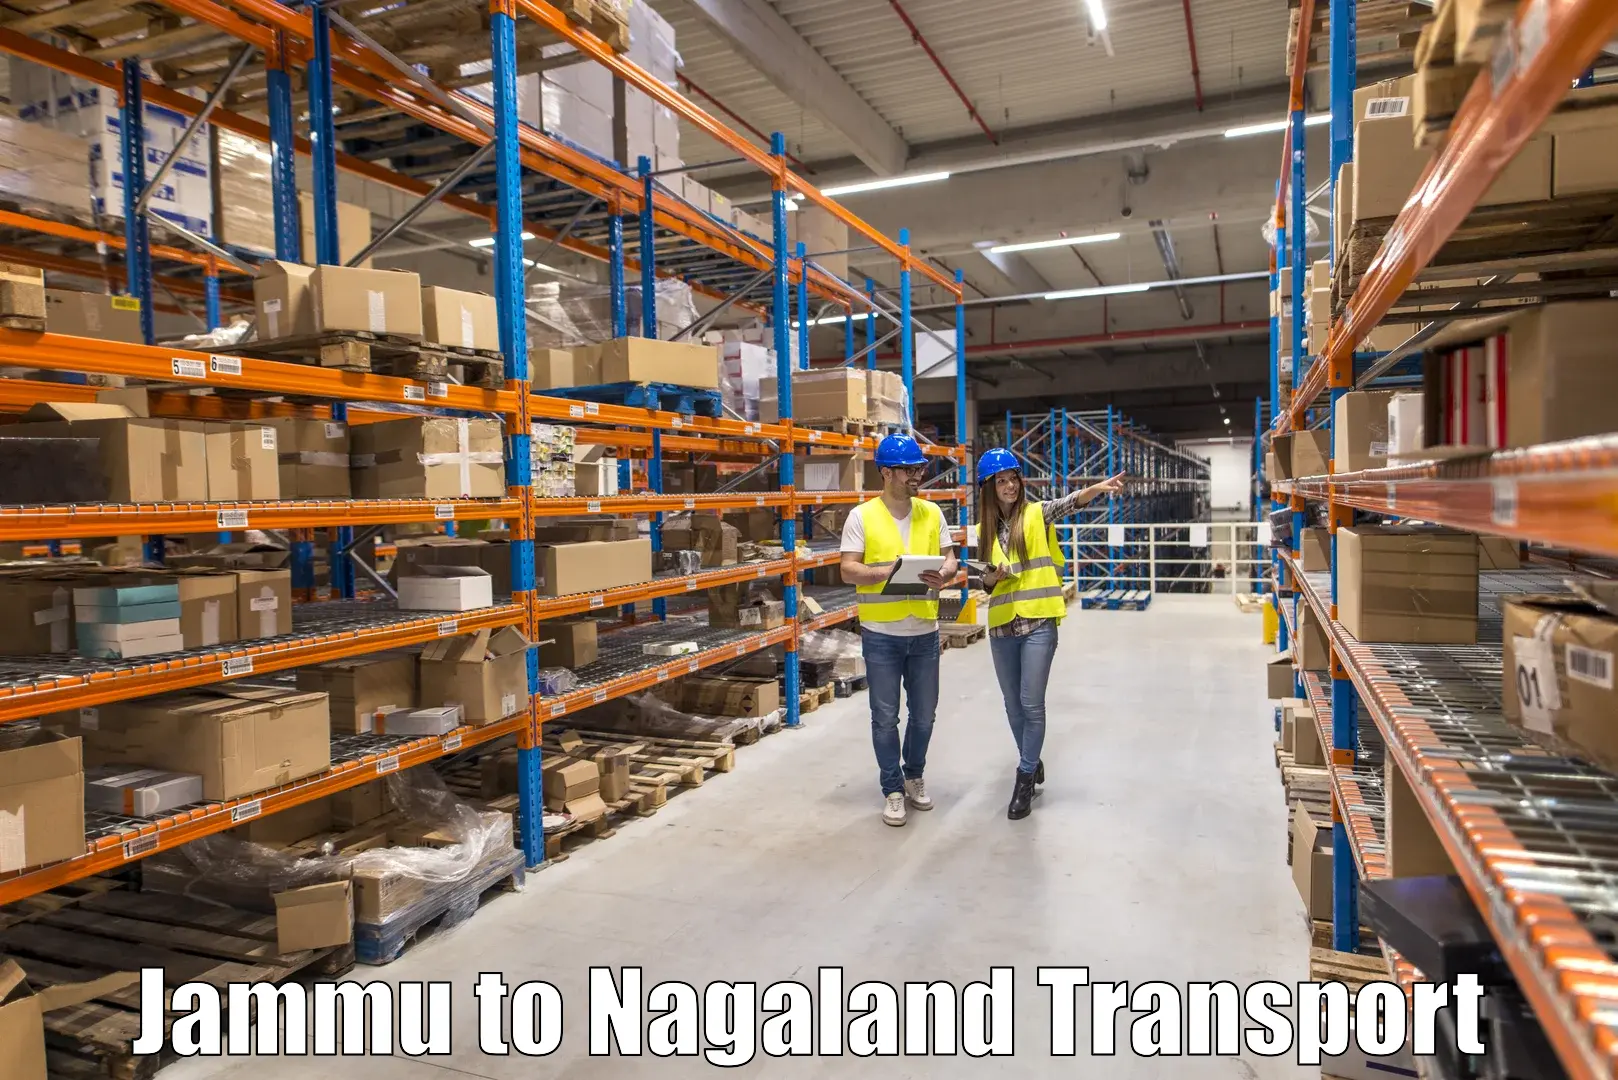 Express transport services Jammu to Nagaland